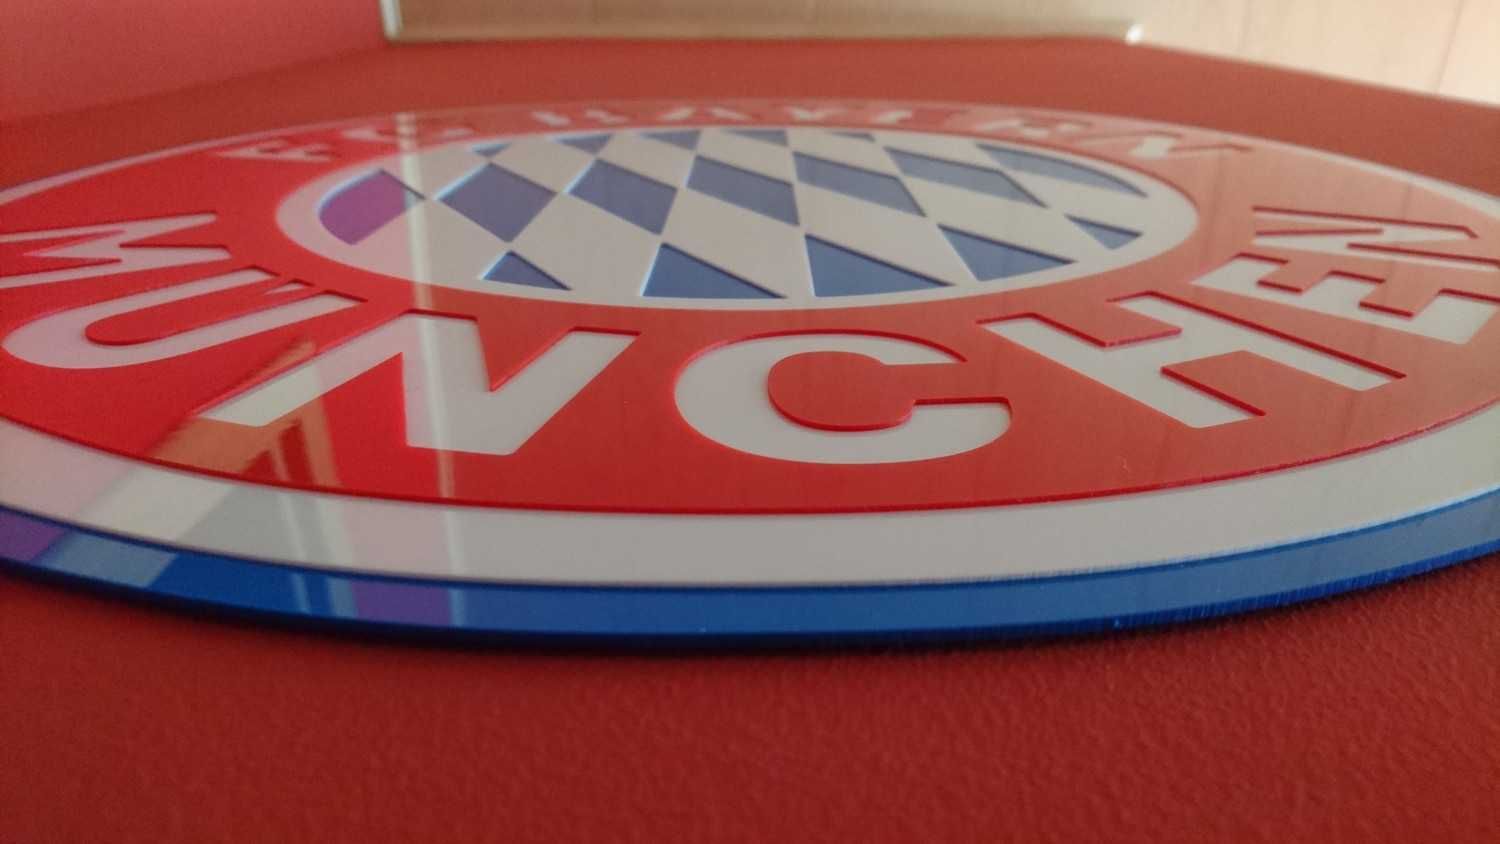 Herb Klubowy emblemat Bayern Monachium do pokoju na ścianę gadżet